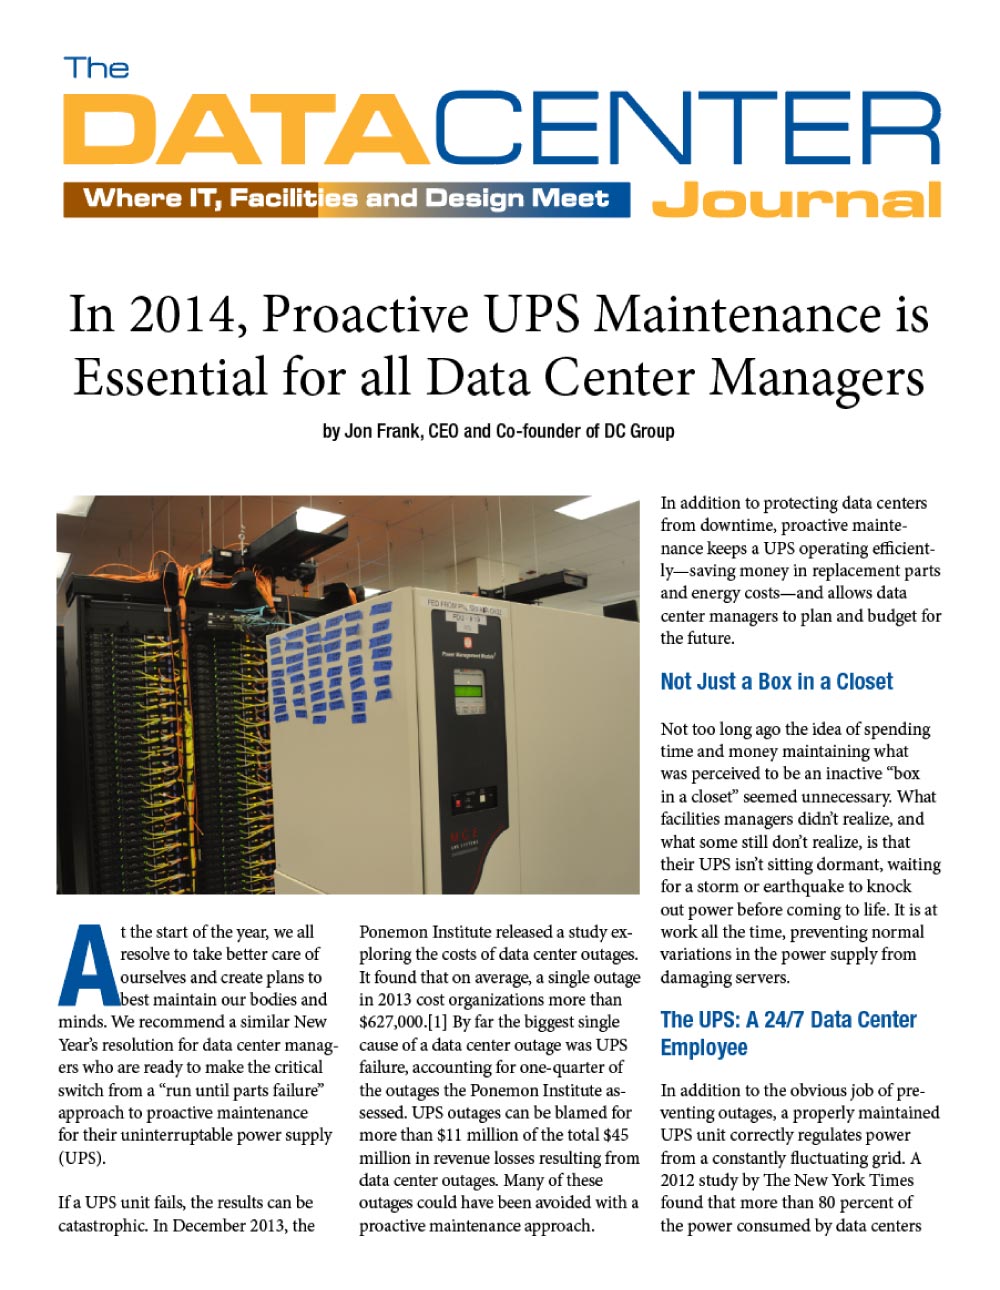 Proactive UPS Maintenance Data Center Journal